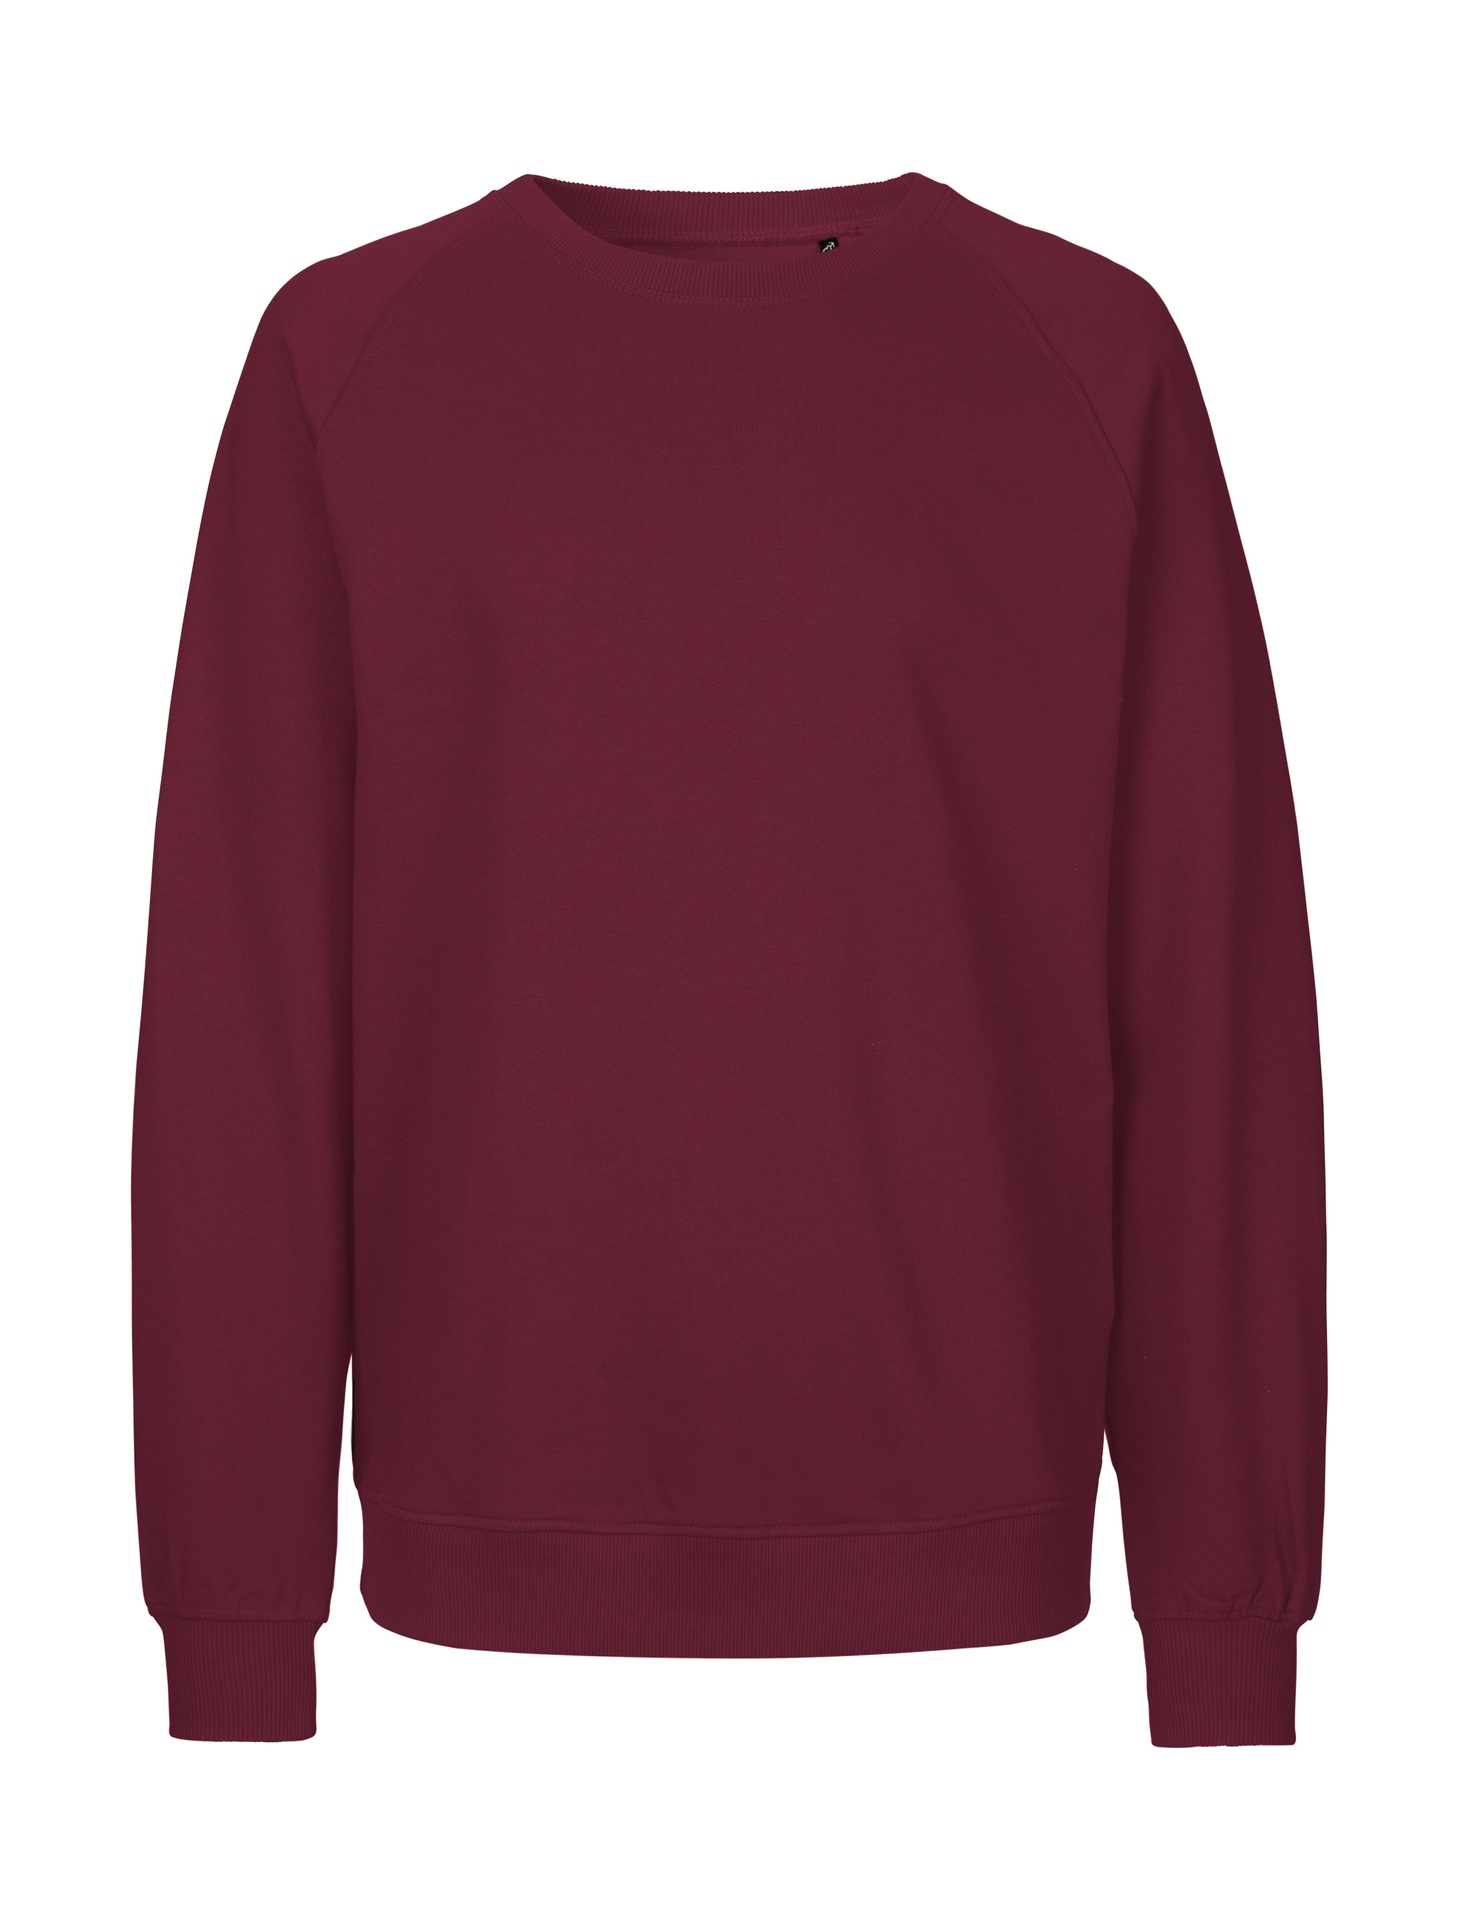 [PR/02762] Unisex Sweatshirt (Bordeaux 26, M)